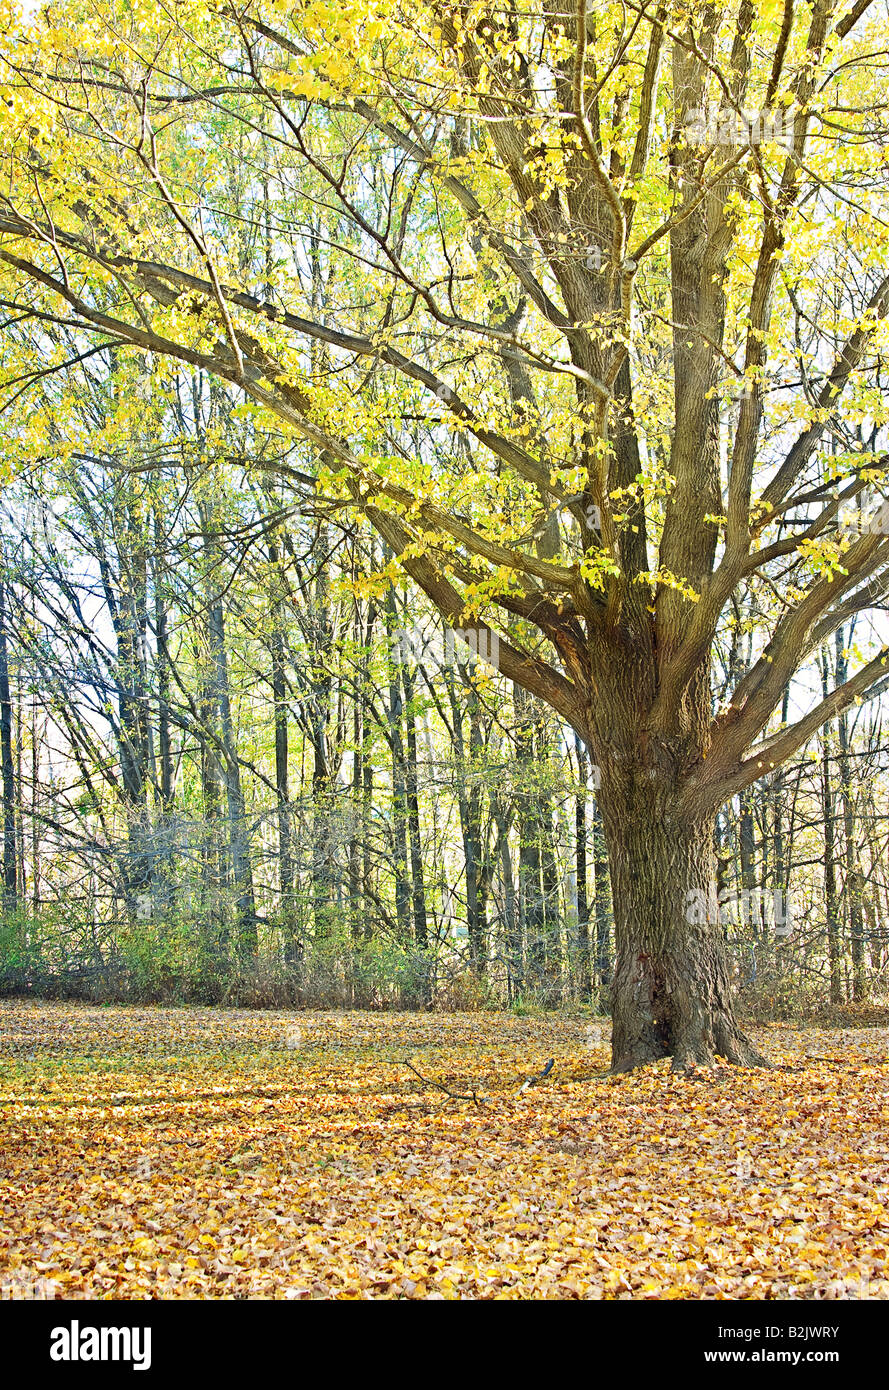 tolles Bild von einem Baum mit gelben Blättern im Herbst Stockfoto